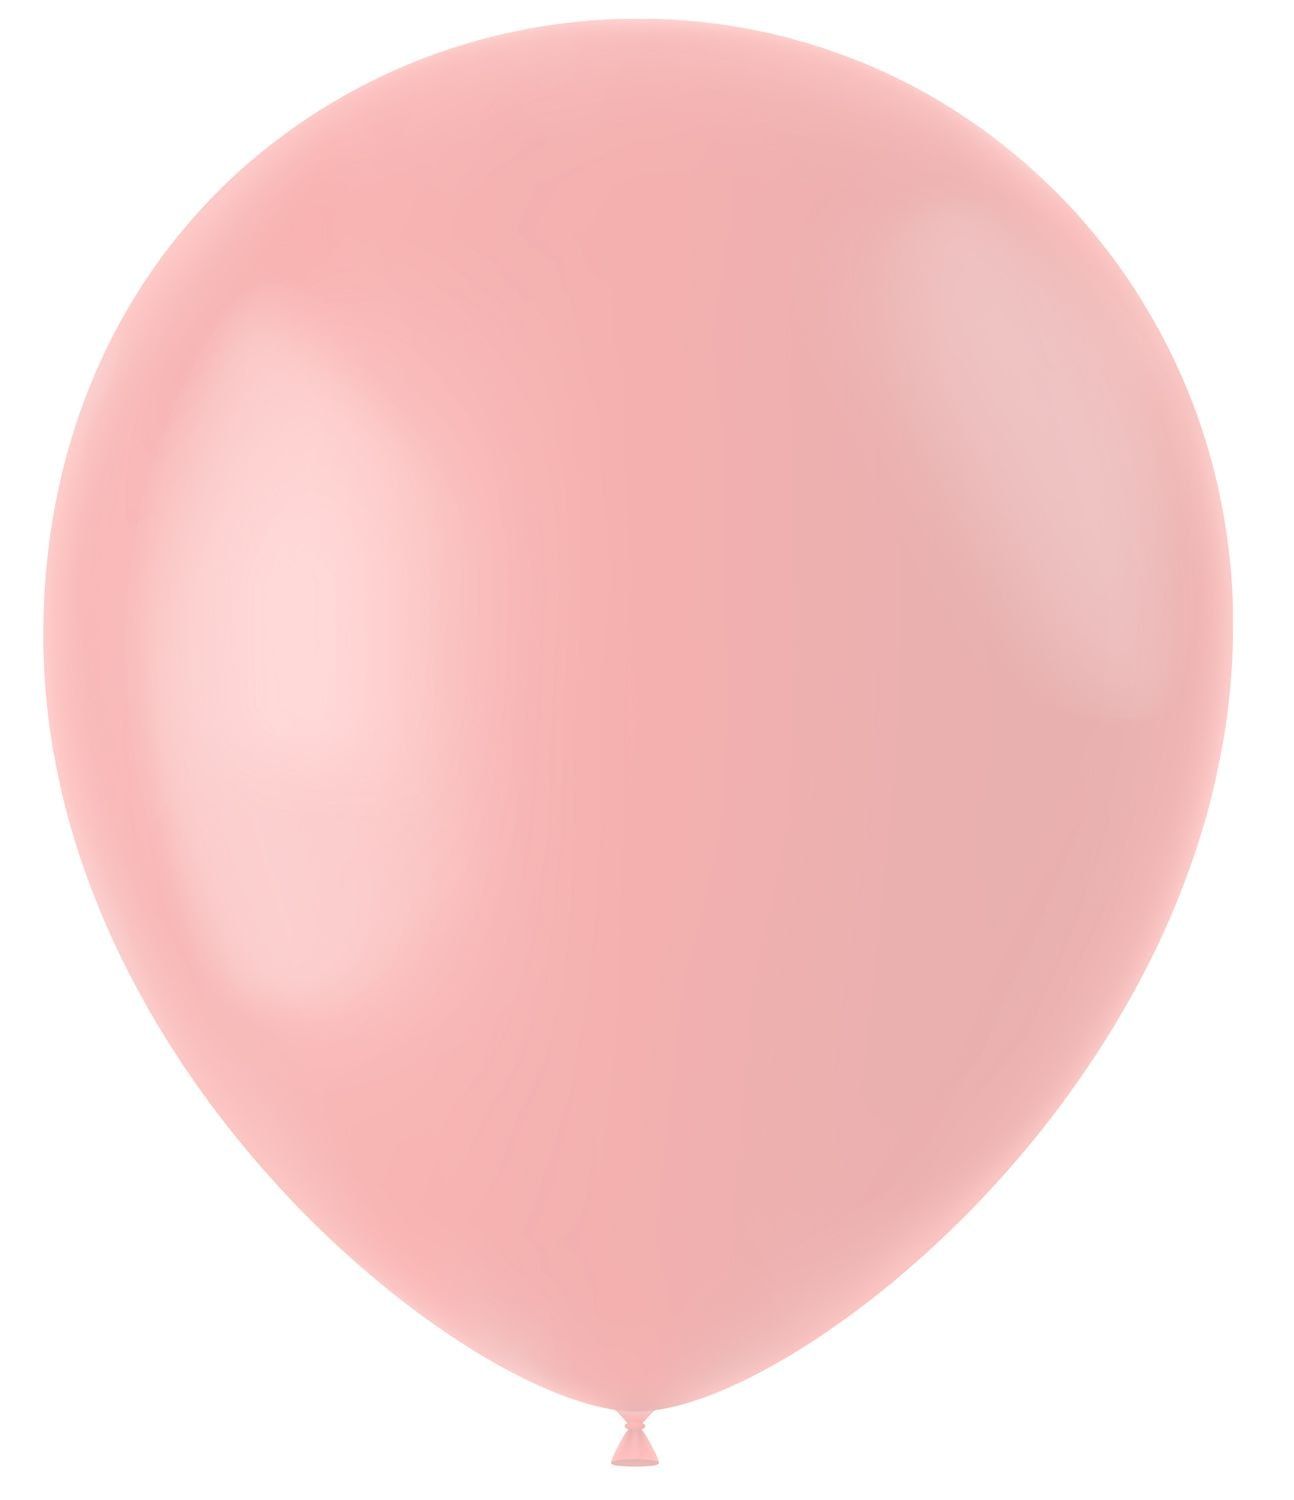 Powder roze mat ballonnen 50 stuks